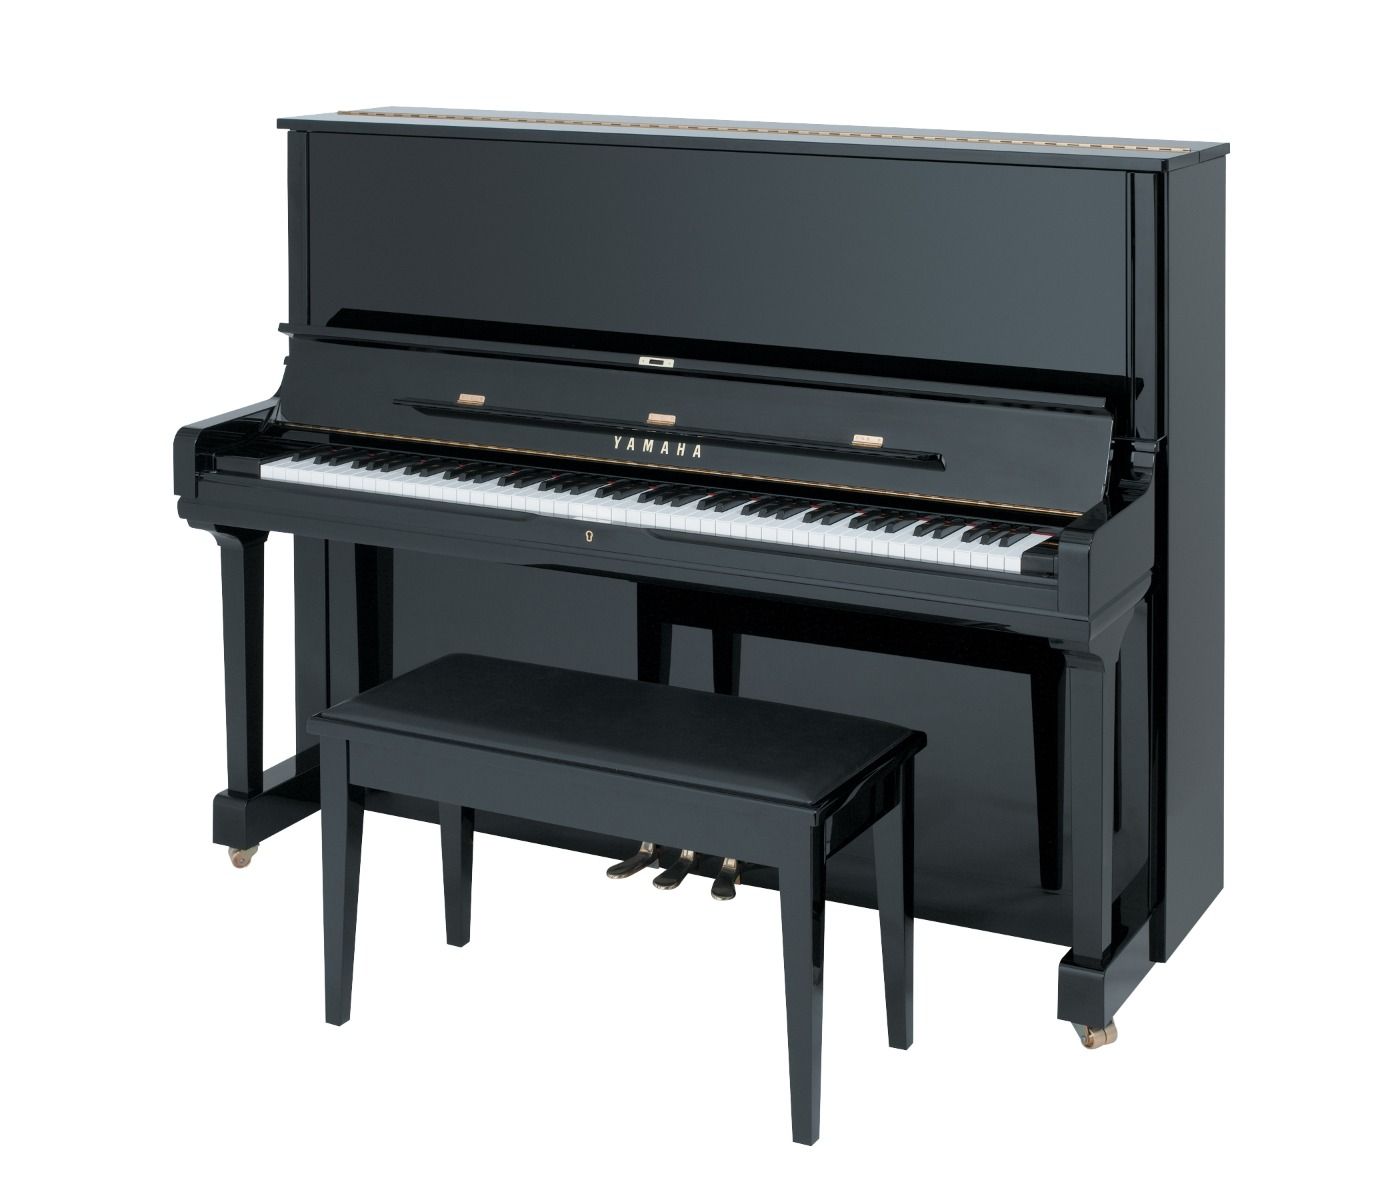 Yamaha YUS3 52" Professional Upright Piano in Polished Ebony